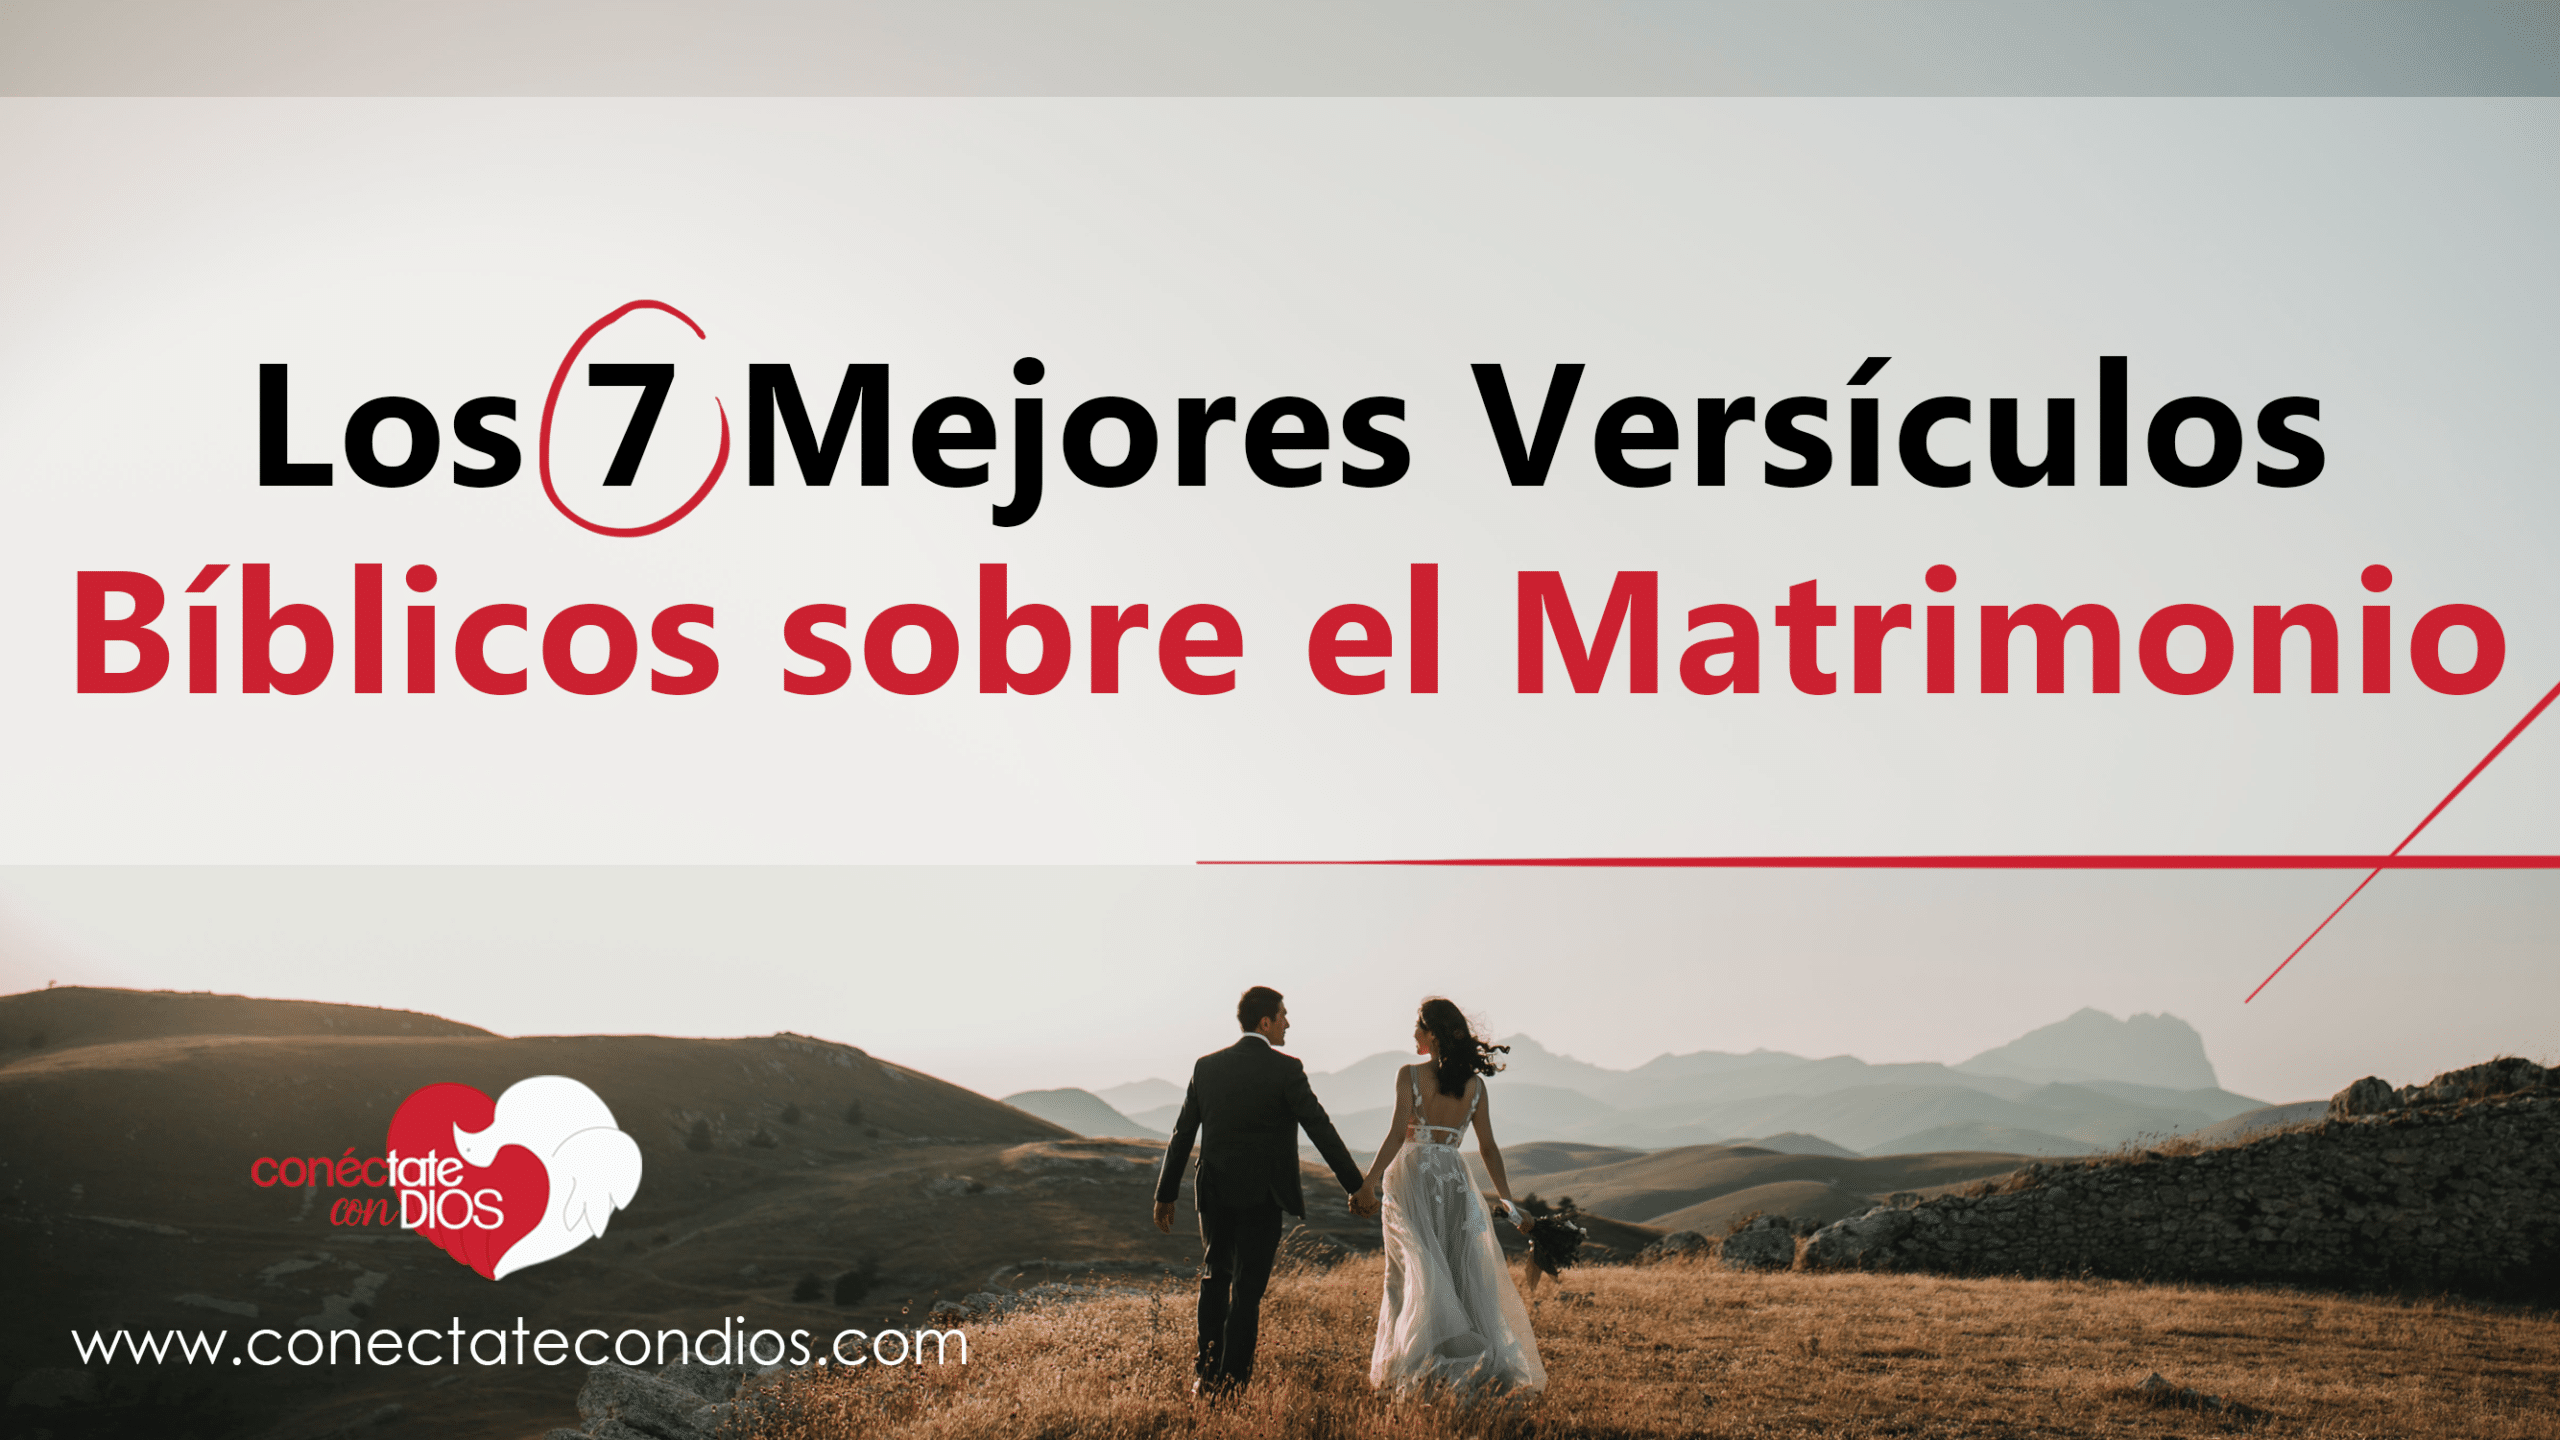 Los 7 Mejores Versículos sobre el Matrimonio | Conéctate Con Dios